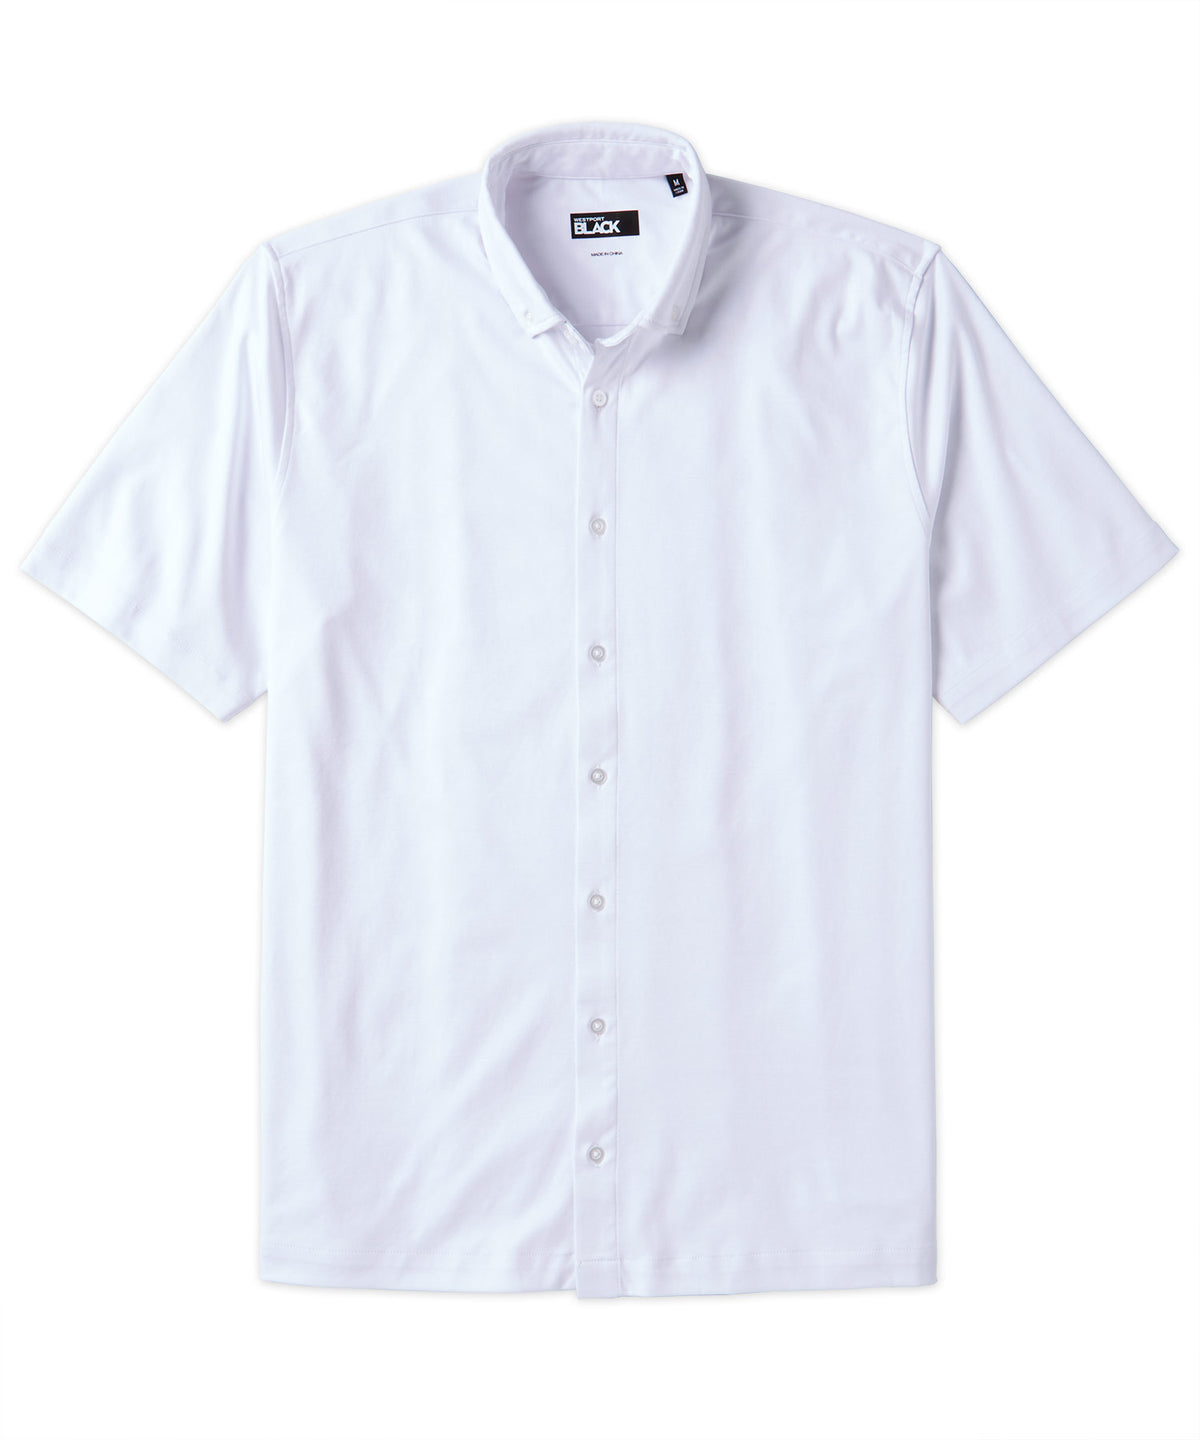 Westport Black Short Sleeve Button Front Sport Shirt, Men's Big & Tall